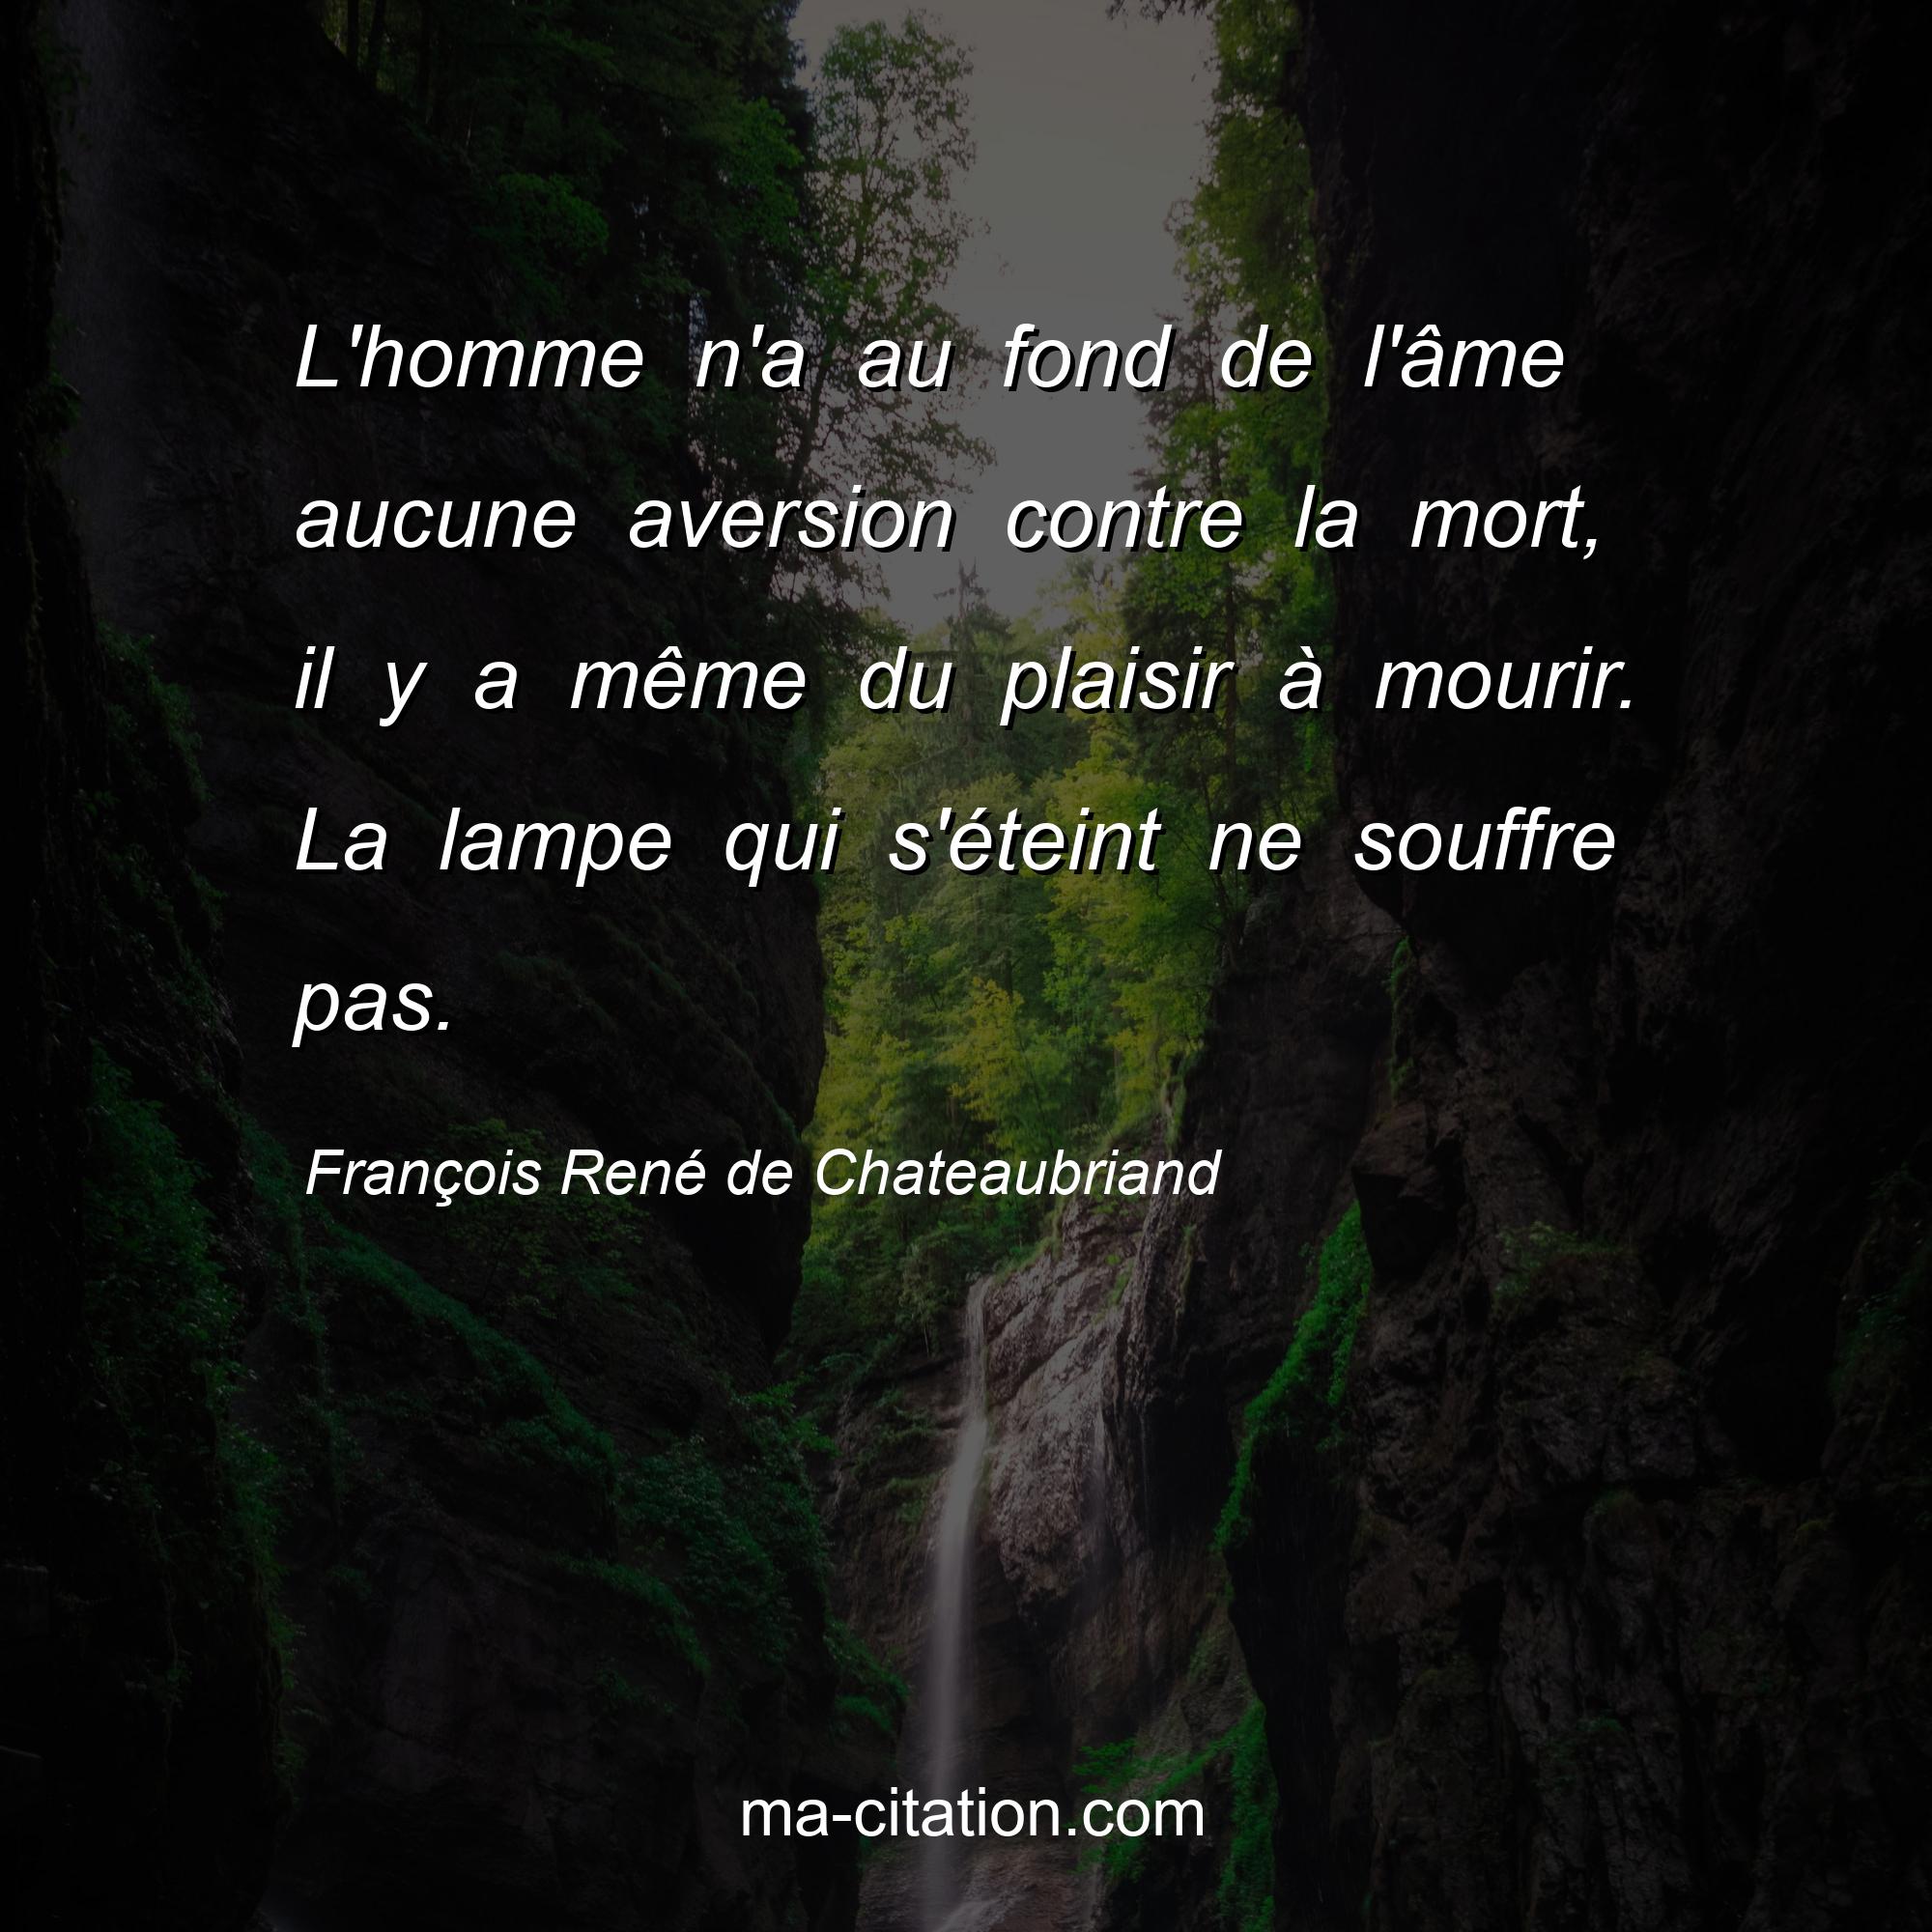 François René de Chateaubriand : L'homme n'a au fond de l'âme aucune aversion contre la mort, il y a même du plaisir à mourir. La lampe qui s'éteint ne souffre pas.